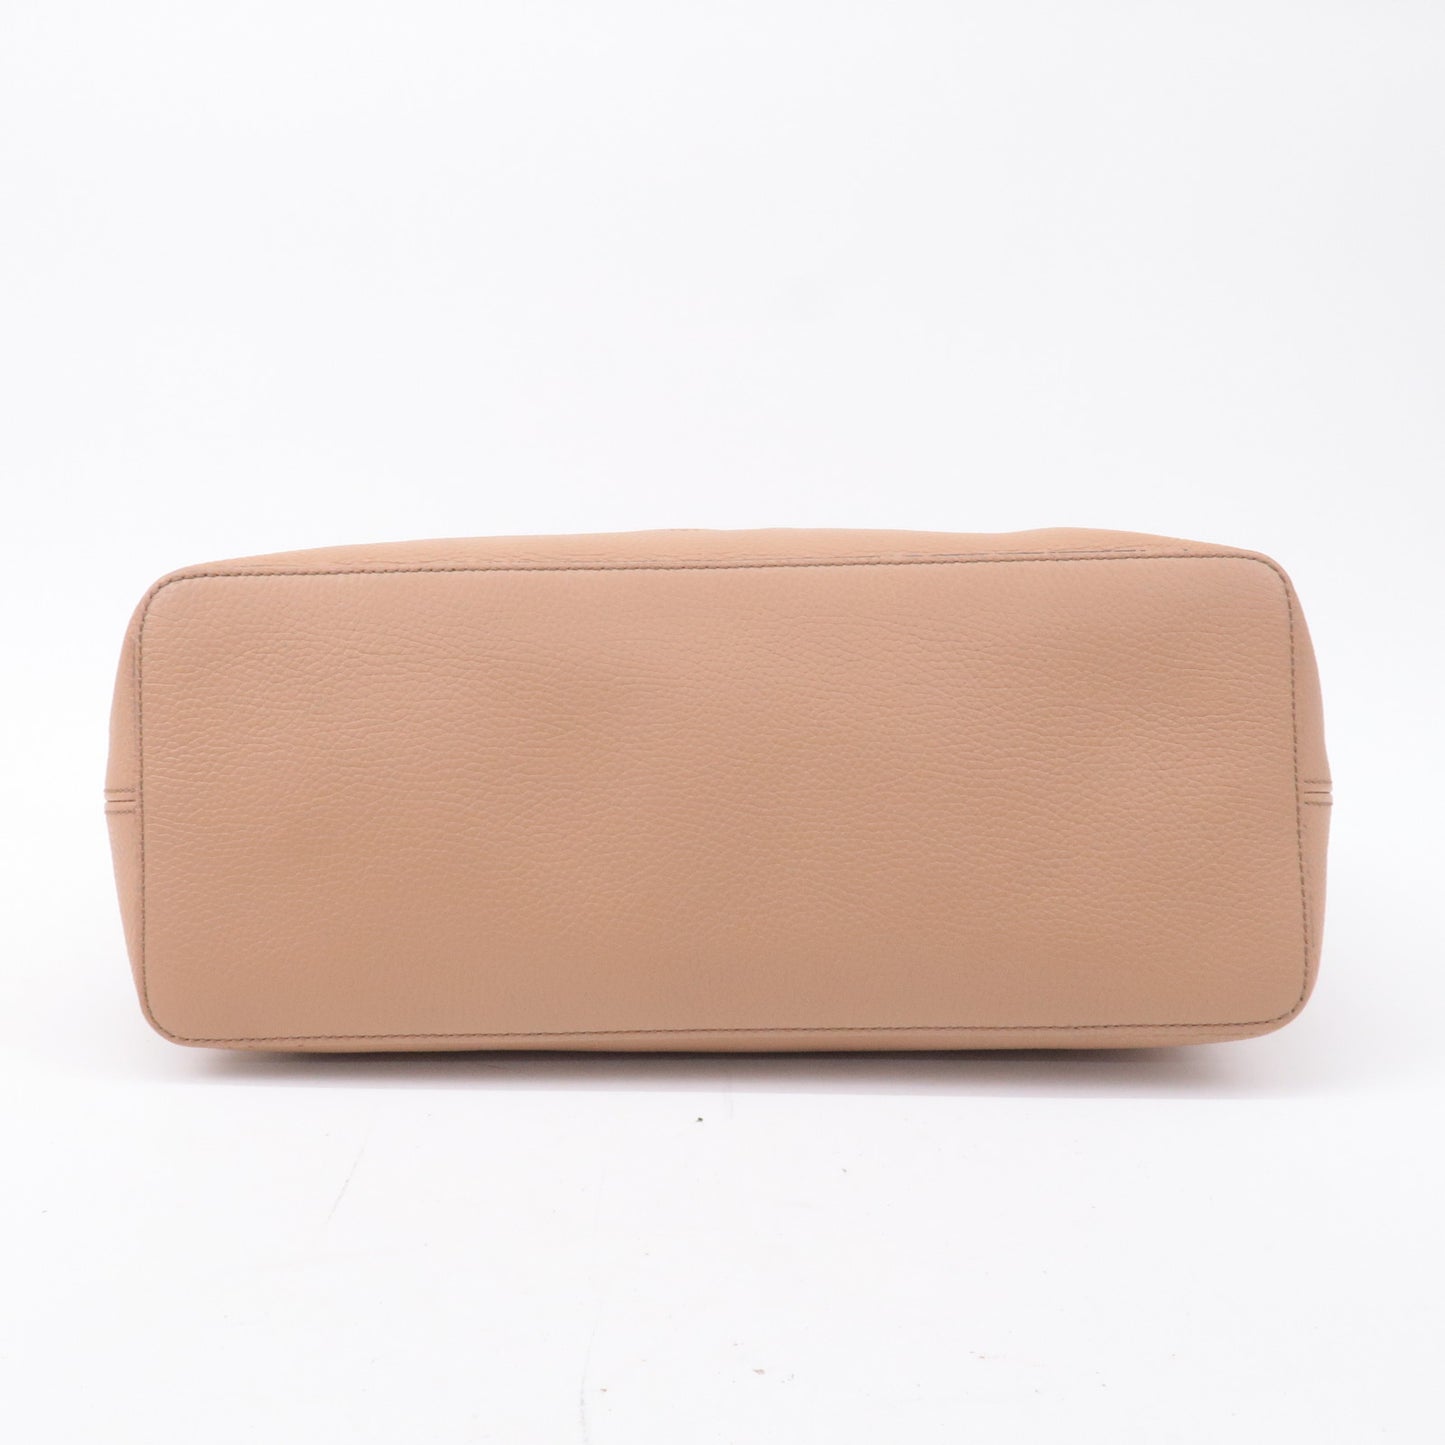 GUCCI SOHO Leather Shoulder Bag Hand Bag Pink Beige 536194